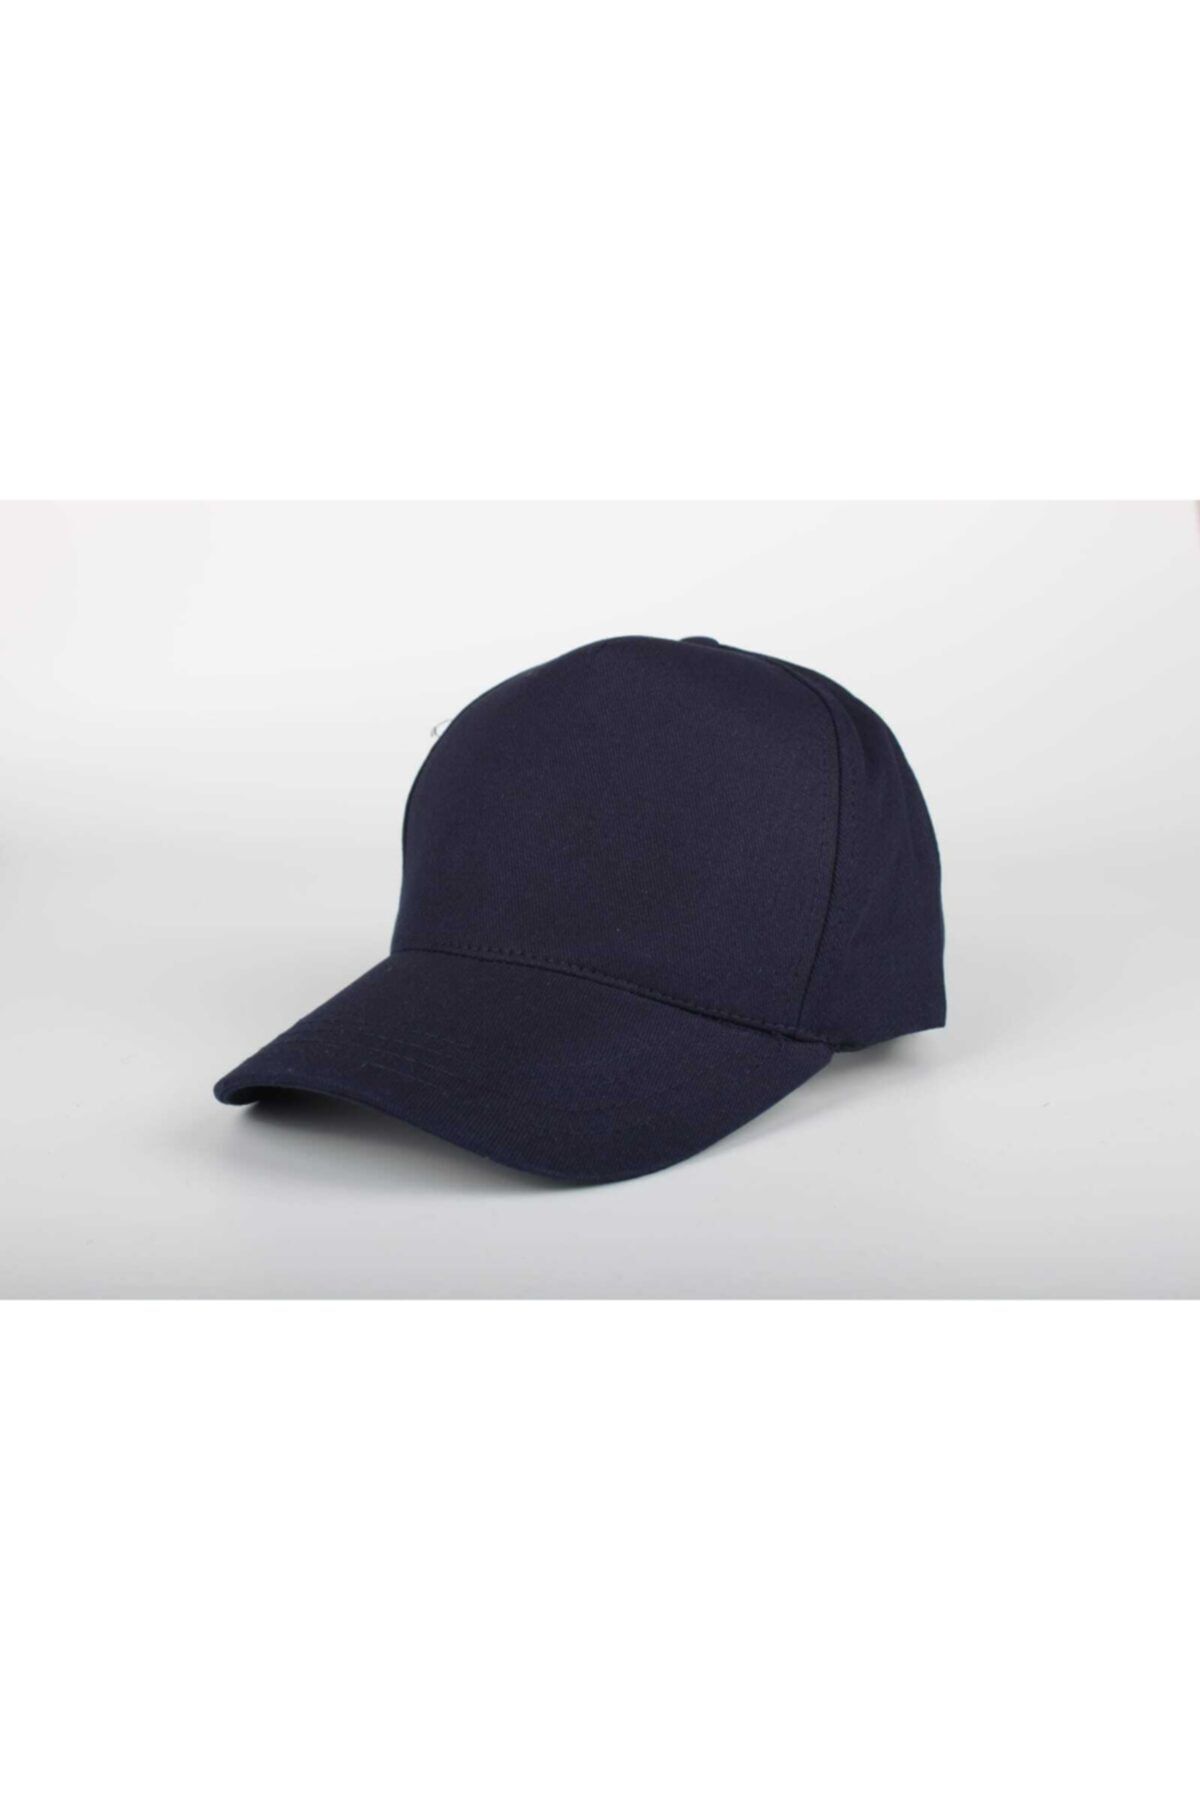 SİYASA Düz Renk Cap Lacivert Unisex Erkek Kadın Şapka Kep